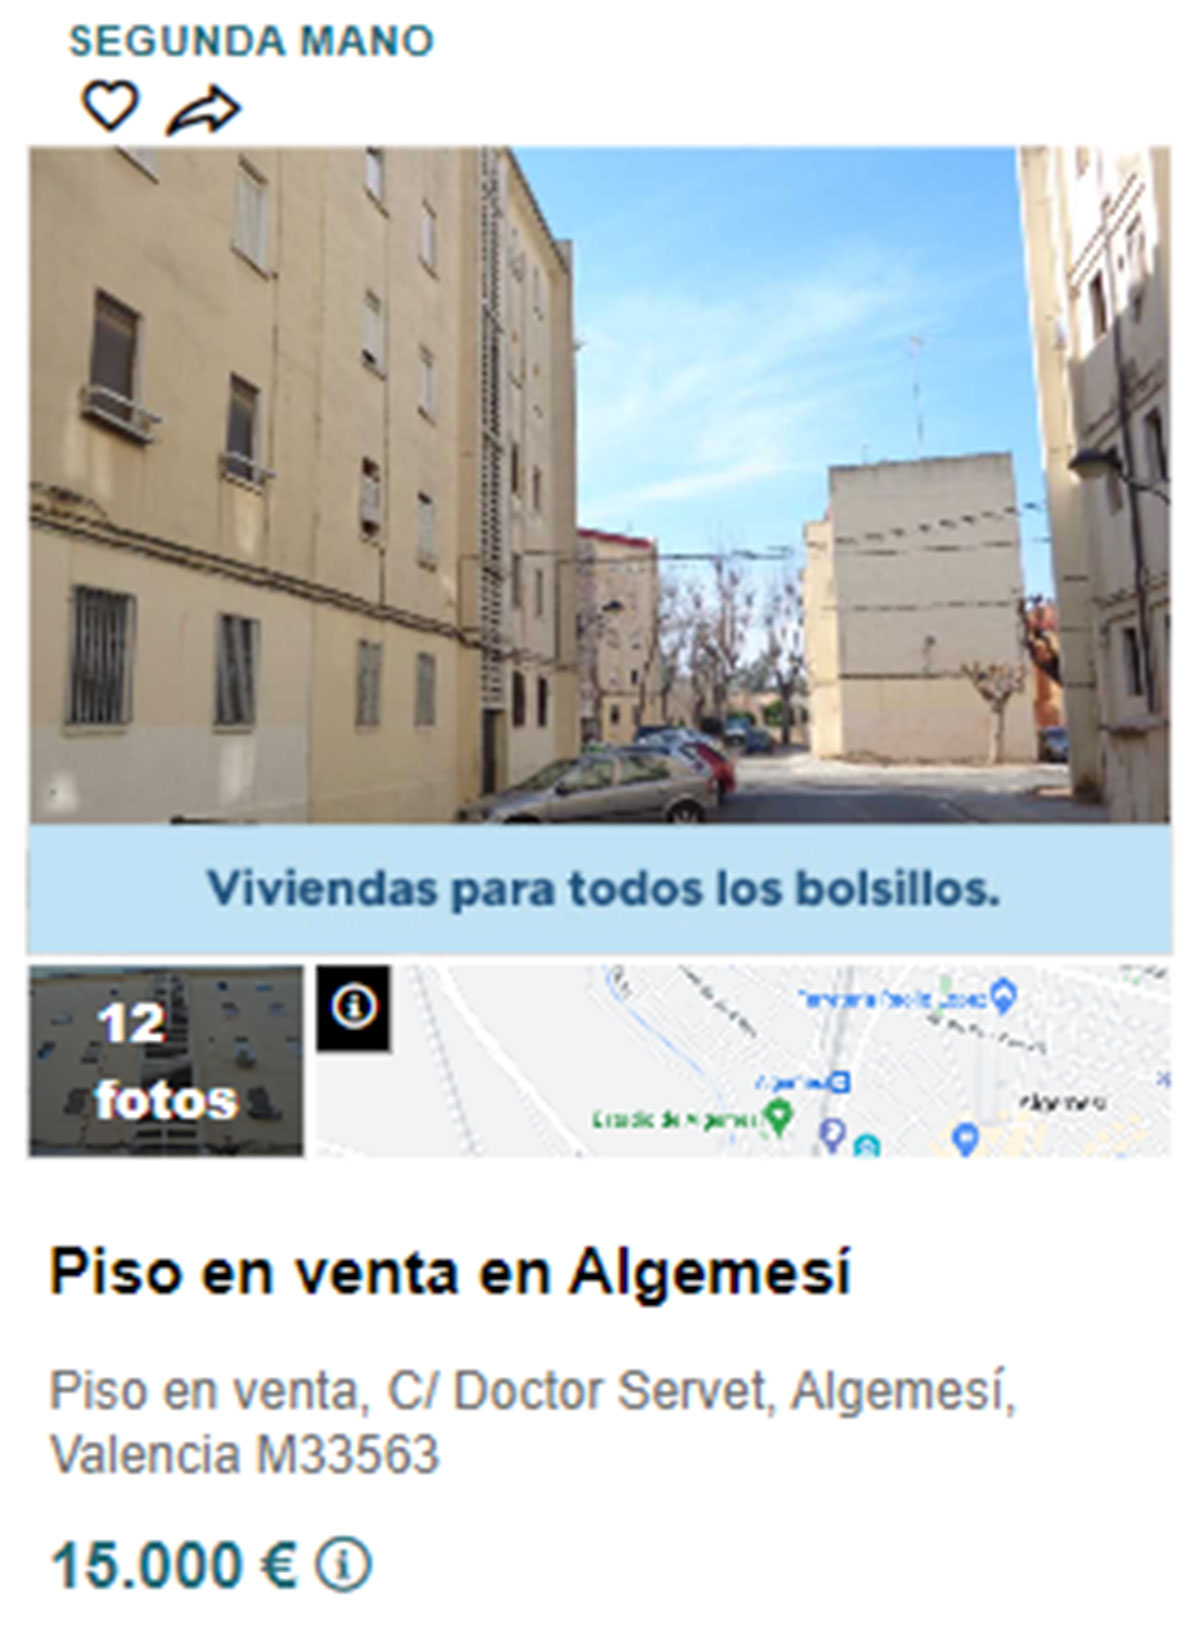 Piso en pueblos de Valencia por 15.000 euros